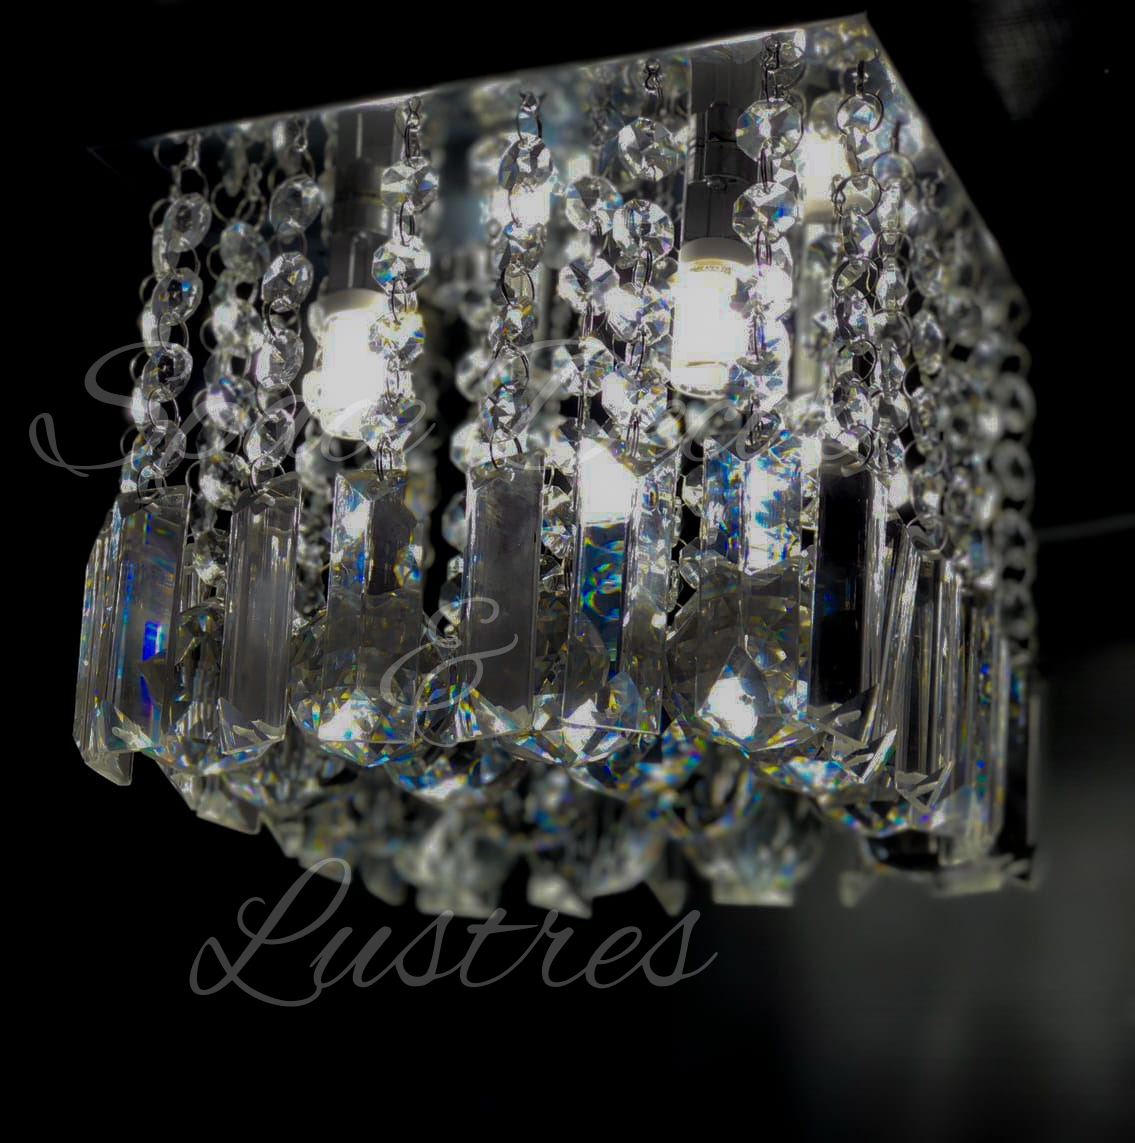 Luminária Plafon de Cristal K9 com Lâmpadas Bf Inclusas:15cm - 4